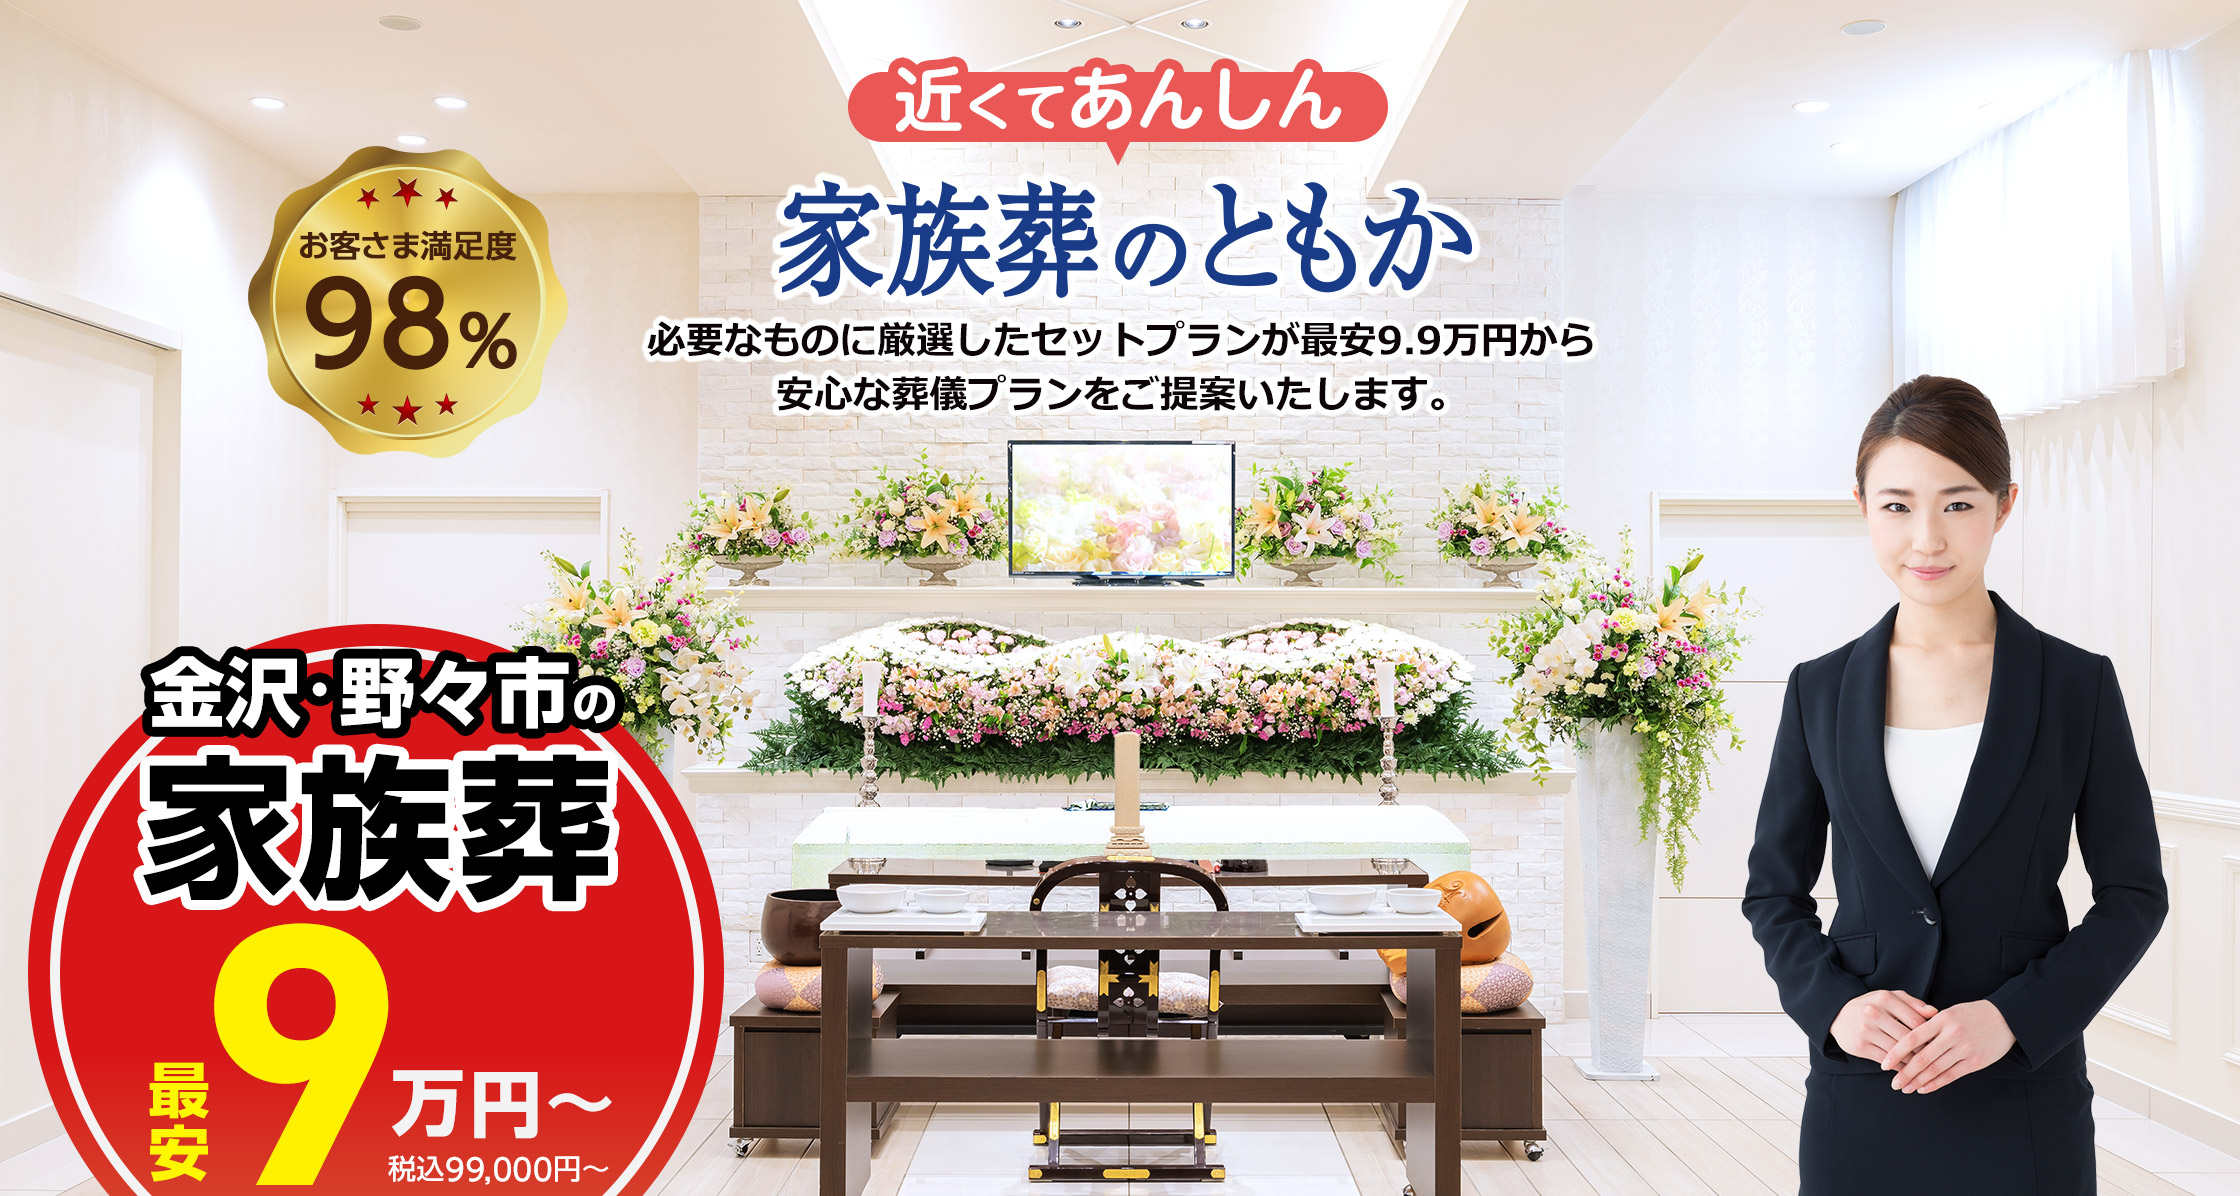 石川県での家族葬ならセットプランが最安9.9万円(税込)のともか 